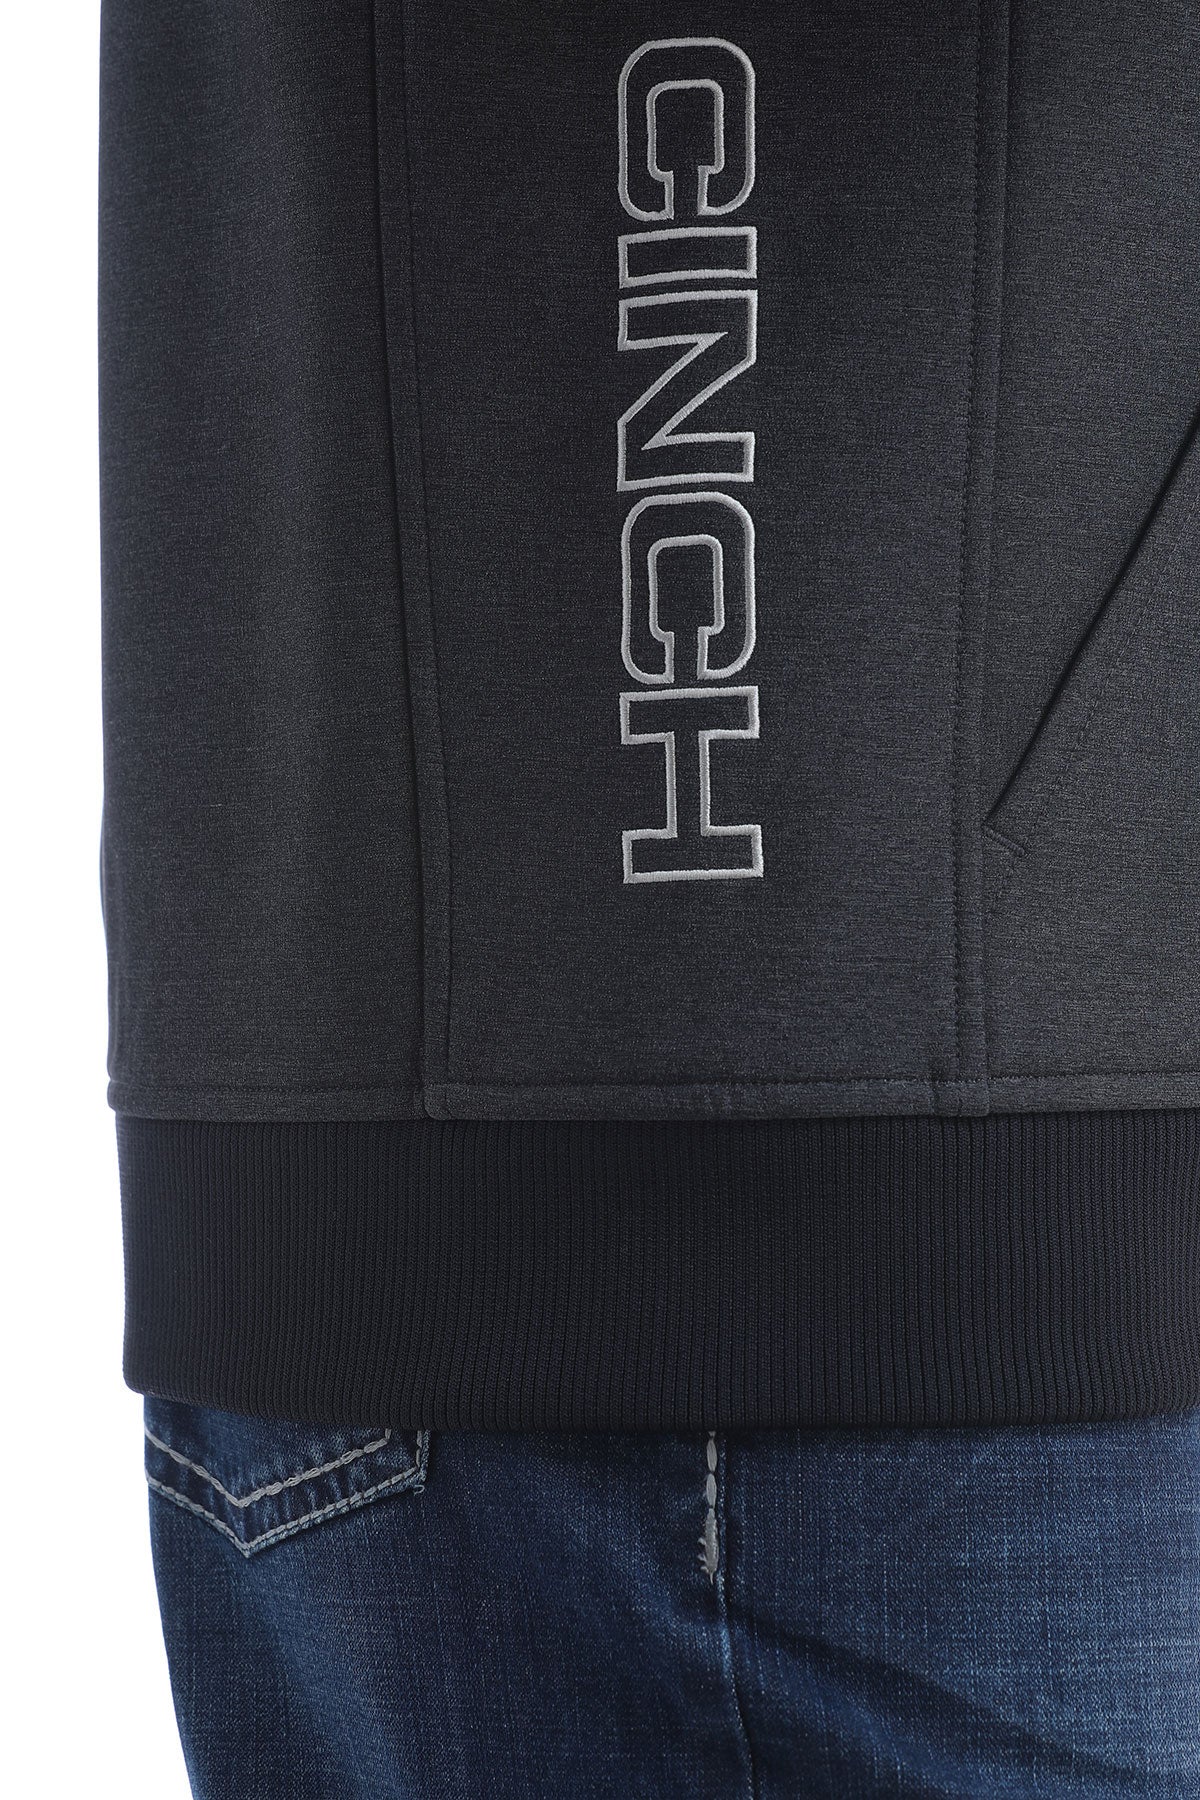 Cinch Men's Black Logo Textured Bonded Concealed Carry Vest